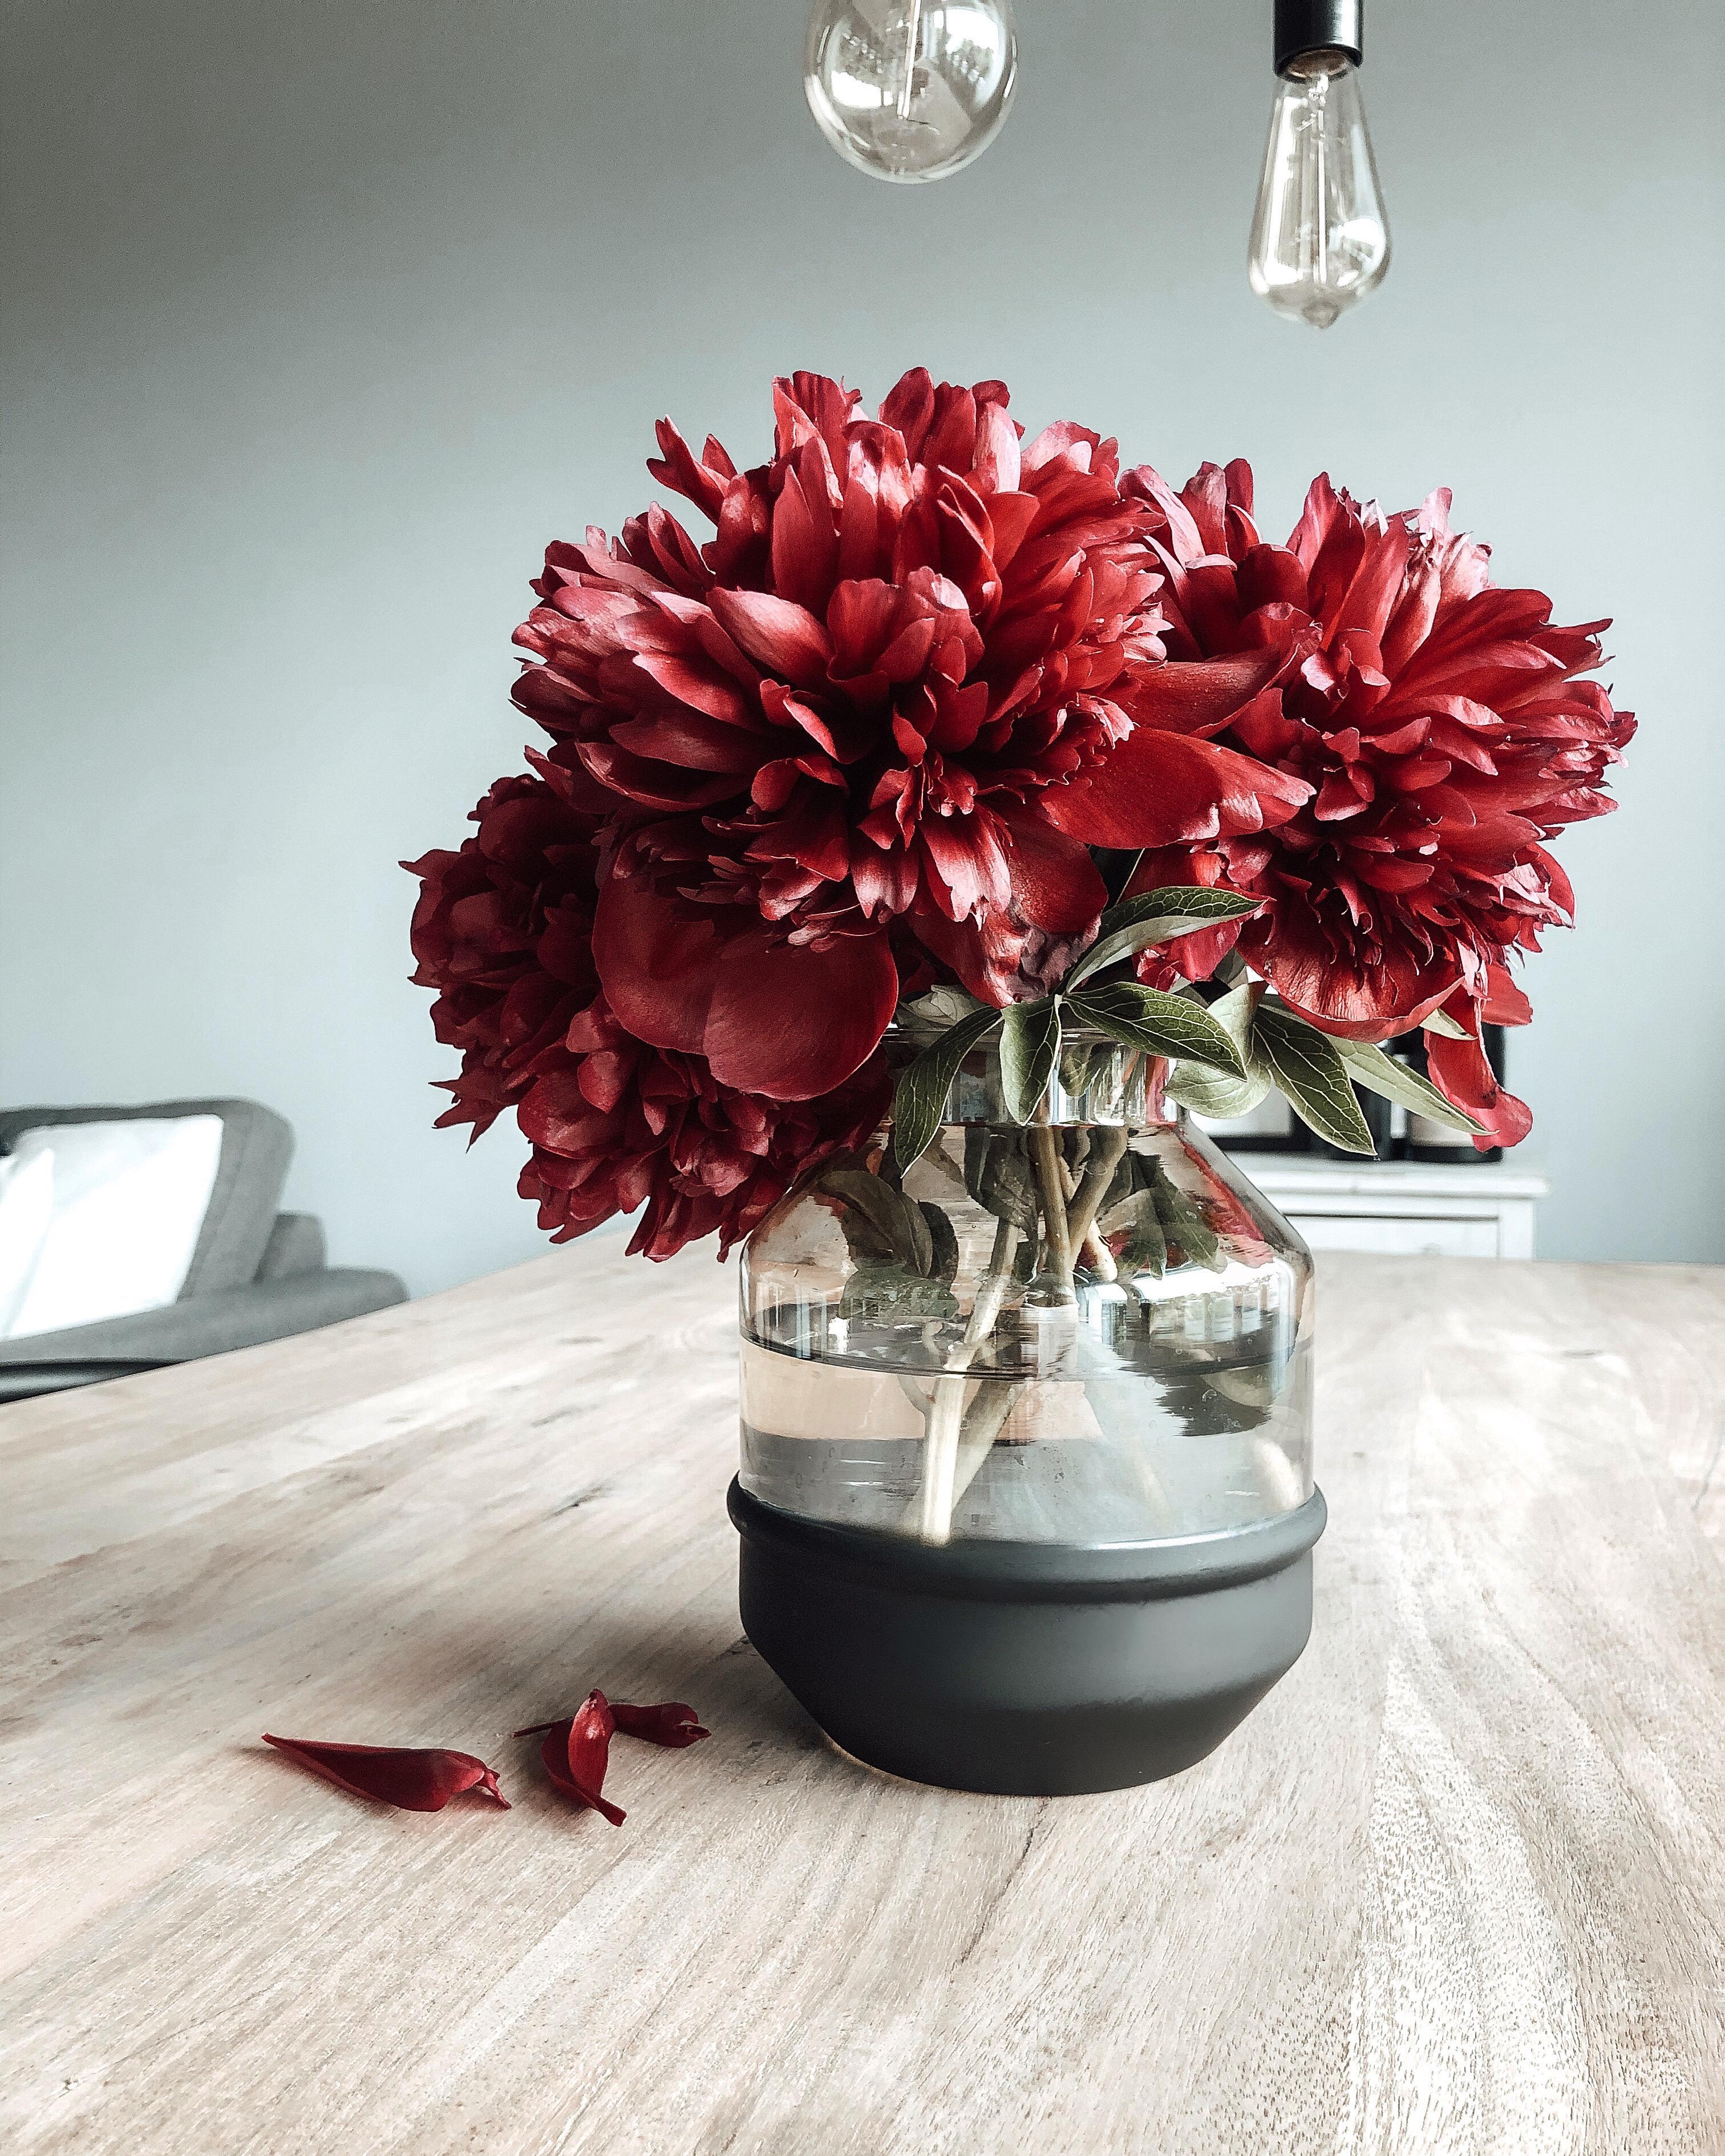 Fast verblüht und doch so schön! 🥀 #pfingstrosen #blumen #rosen #vase #freshflowers 